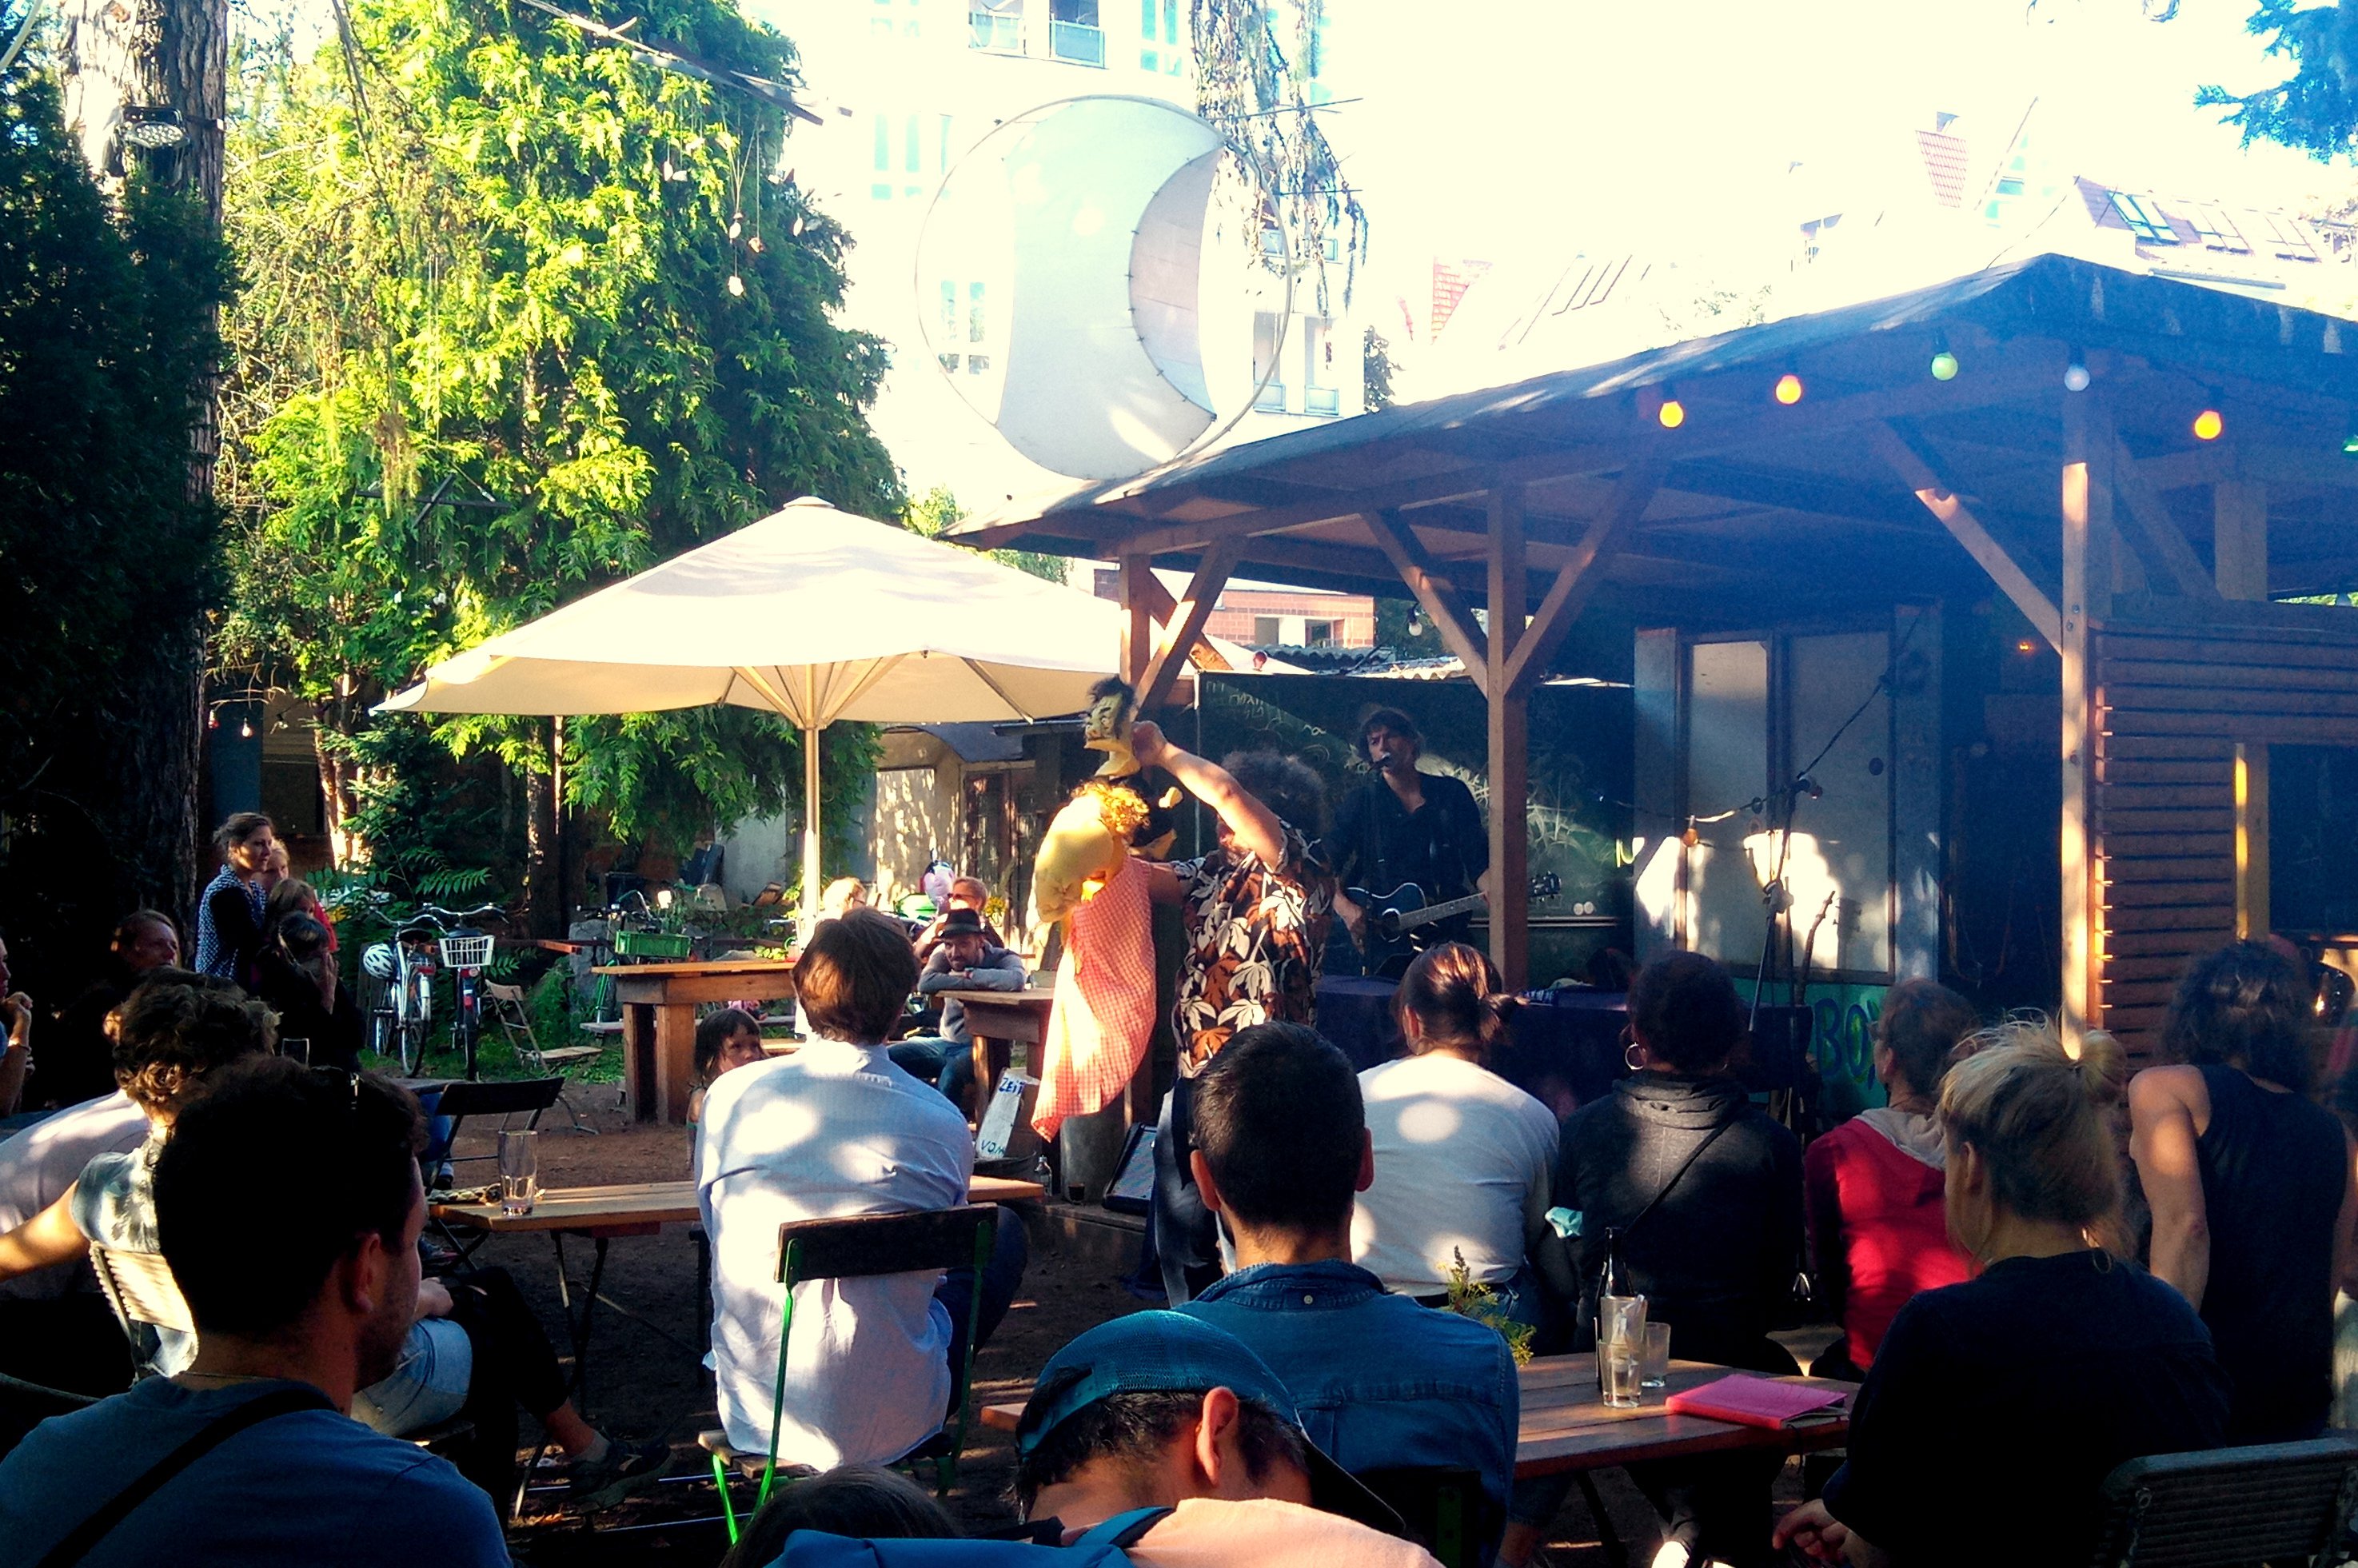 Auf der Open-Air-Bühne in den Prinzessinnengärten steht bei Sonnenschein eine Person mit Gitarre und singt. Vor der Bühne steht eine Person, die zwei Handpuppen bzw. eine Maske bewegt. Im Publikum sitzen ca. 20 Leute.